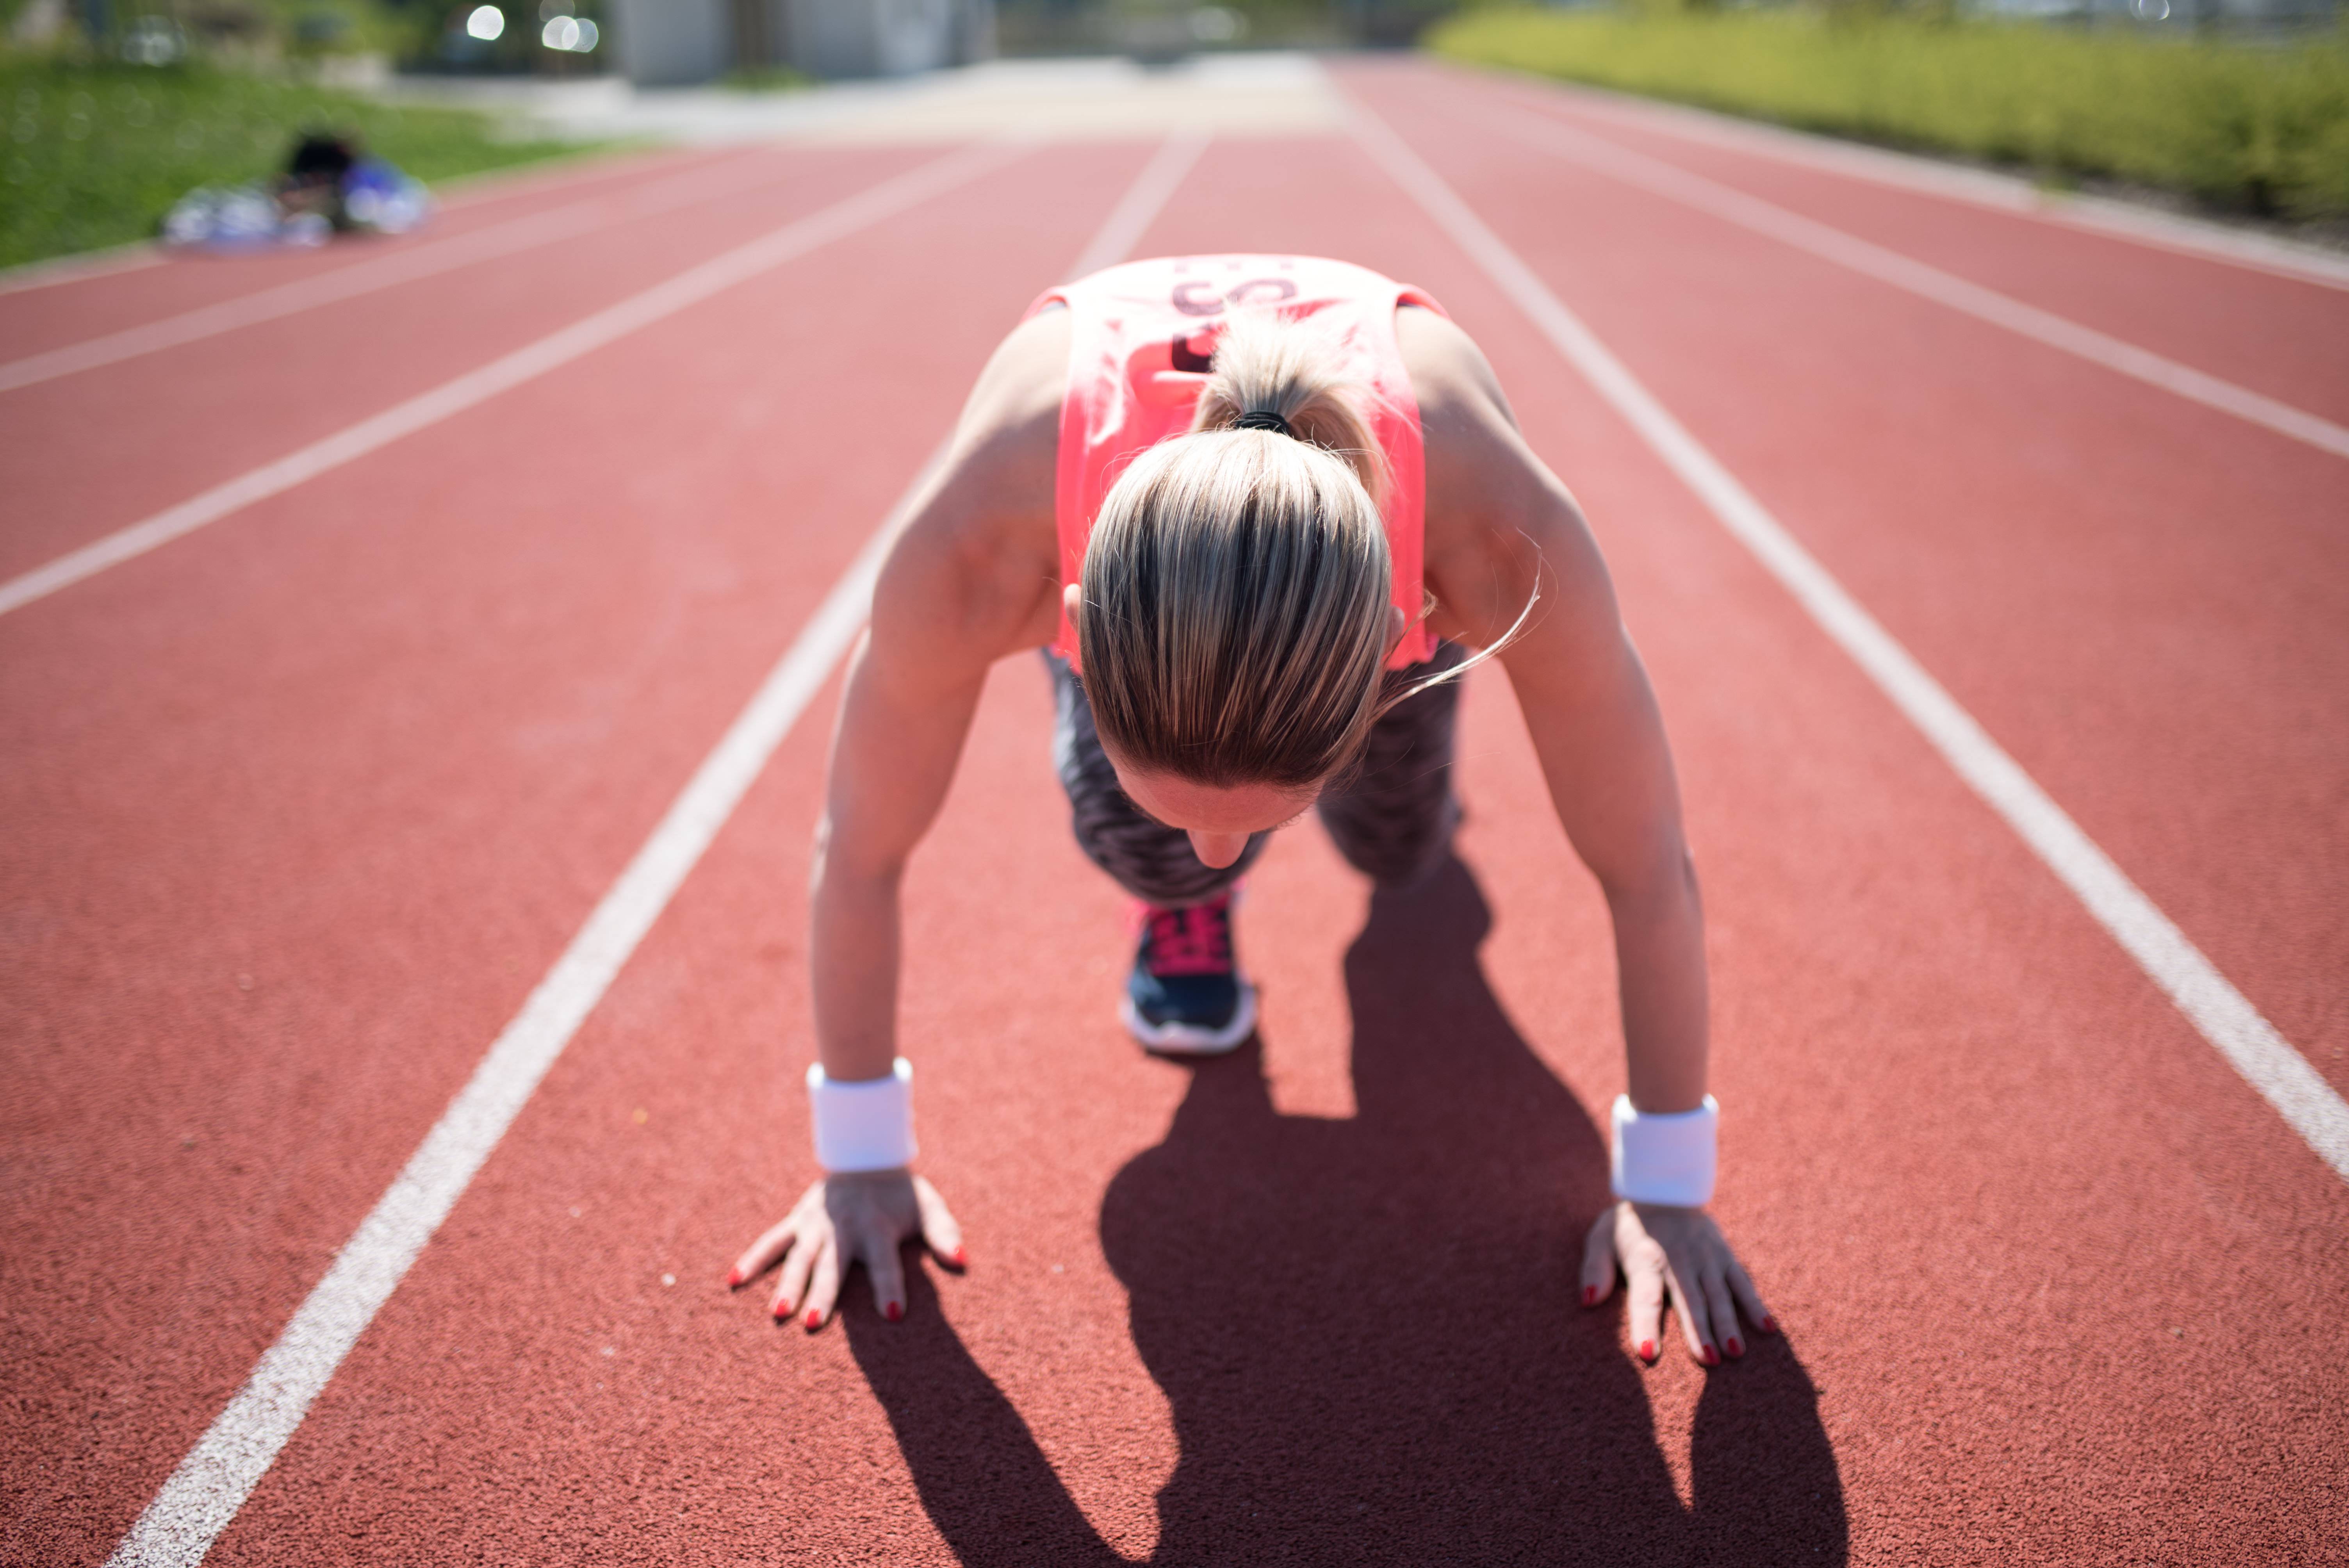 Беговые виды лёгкой атлетики: бег эстафетный, спортивный на короткие дистанции, коротко о спорте